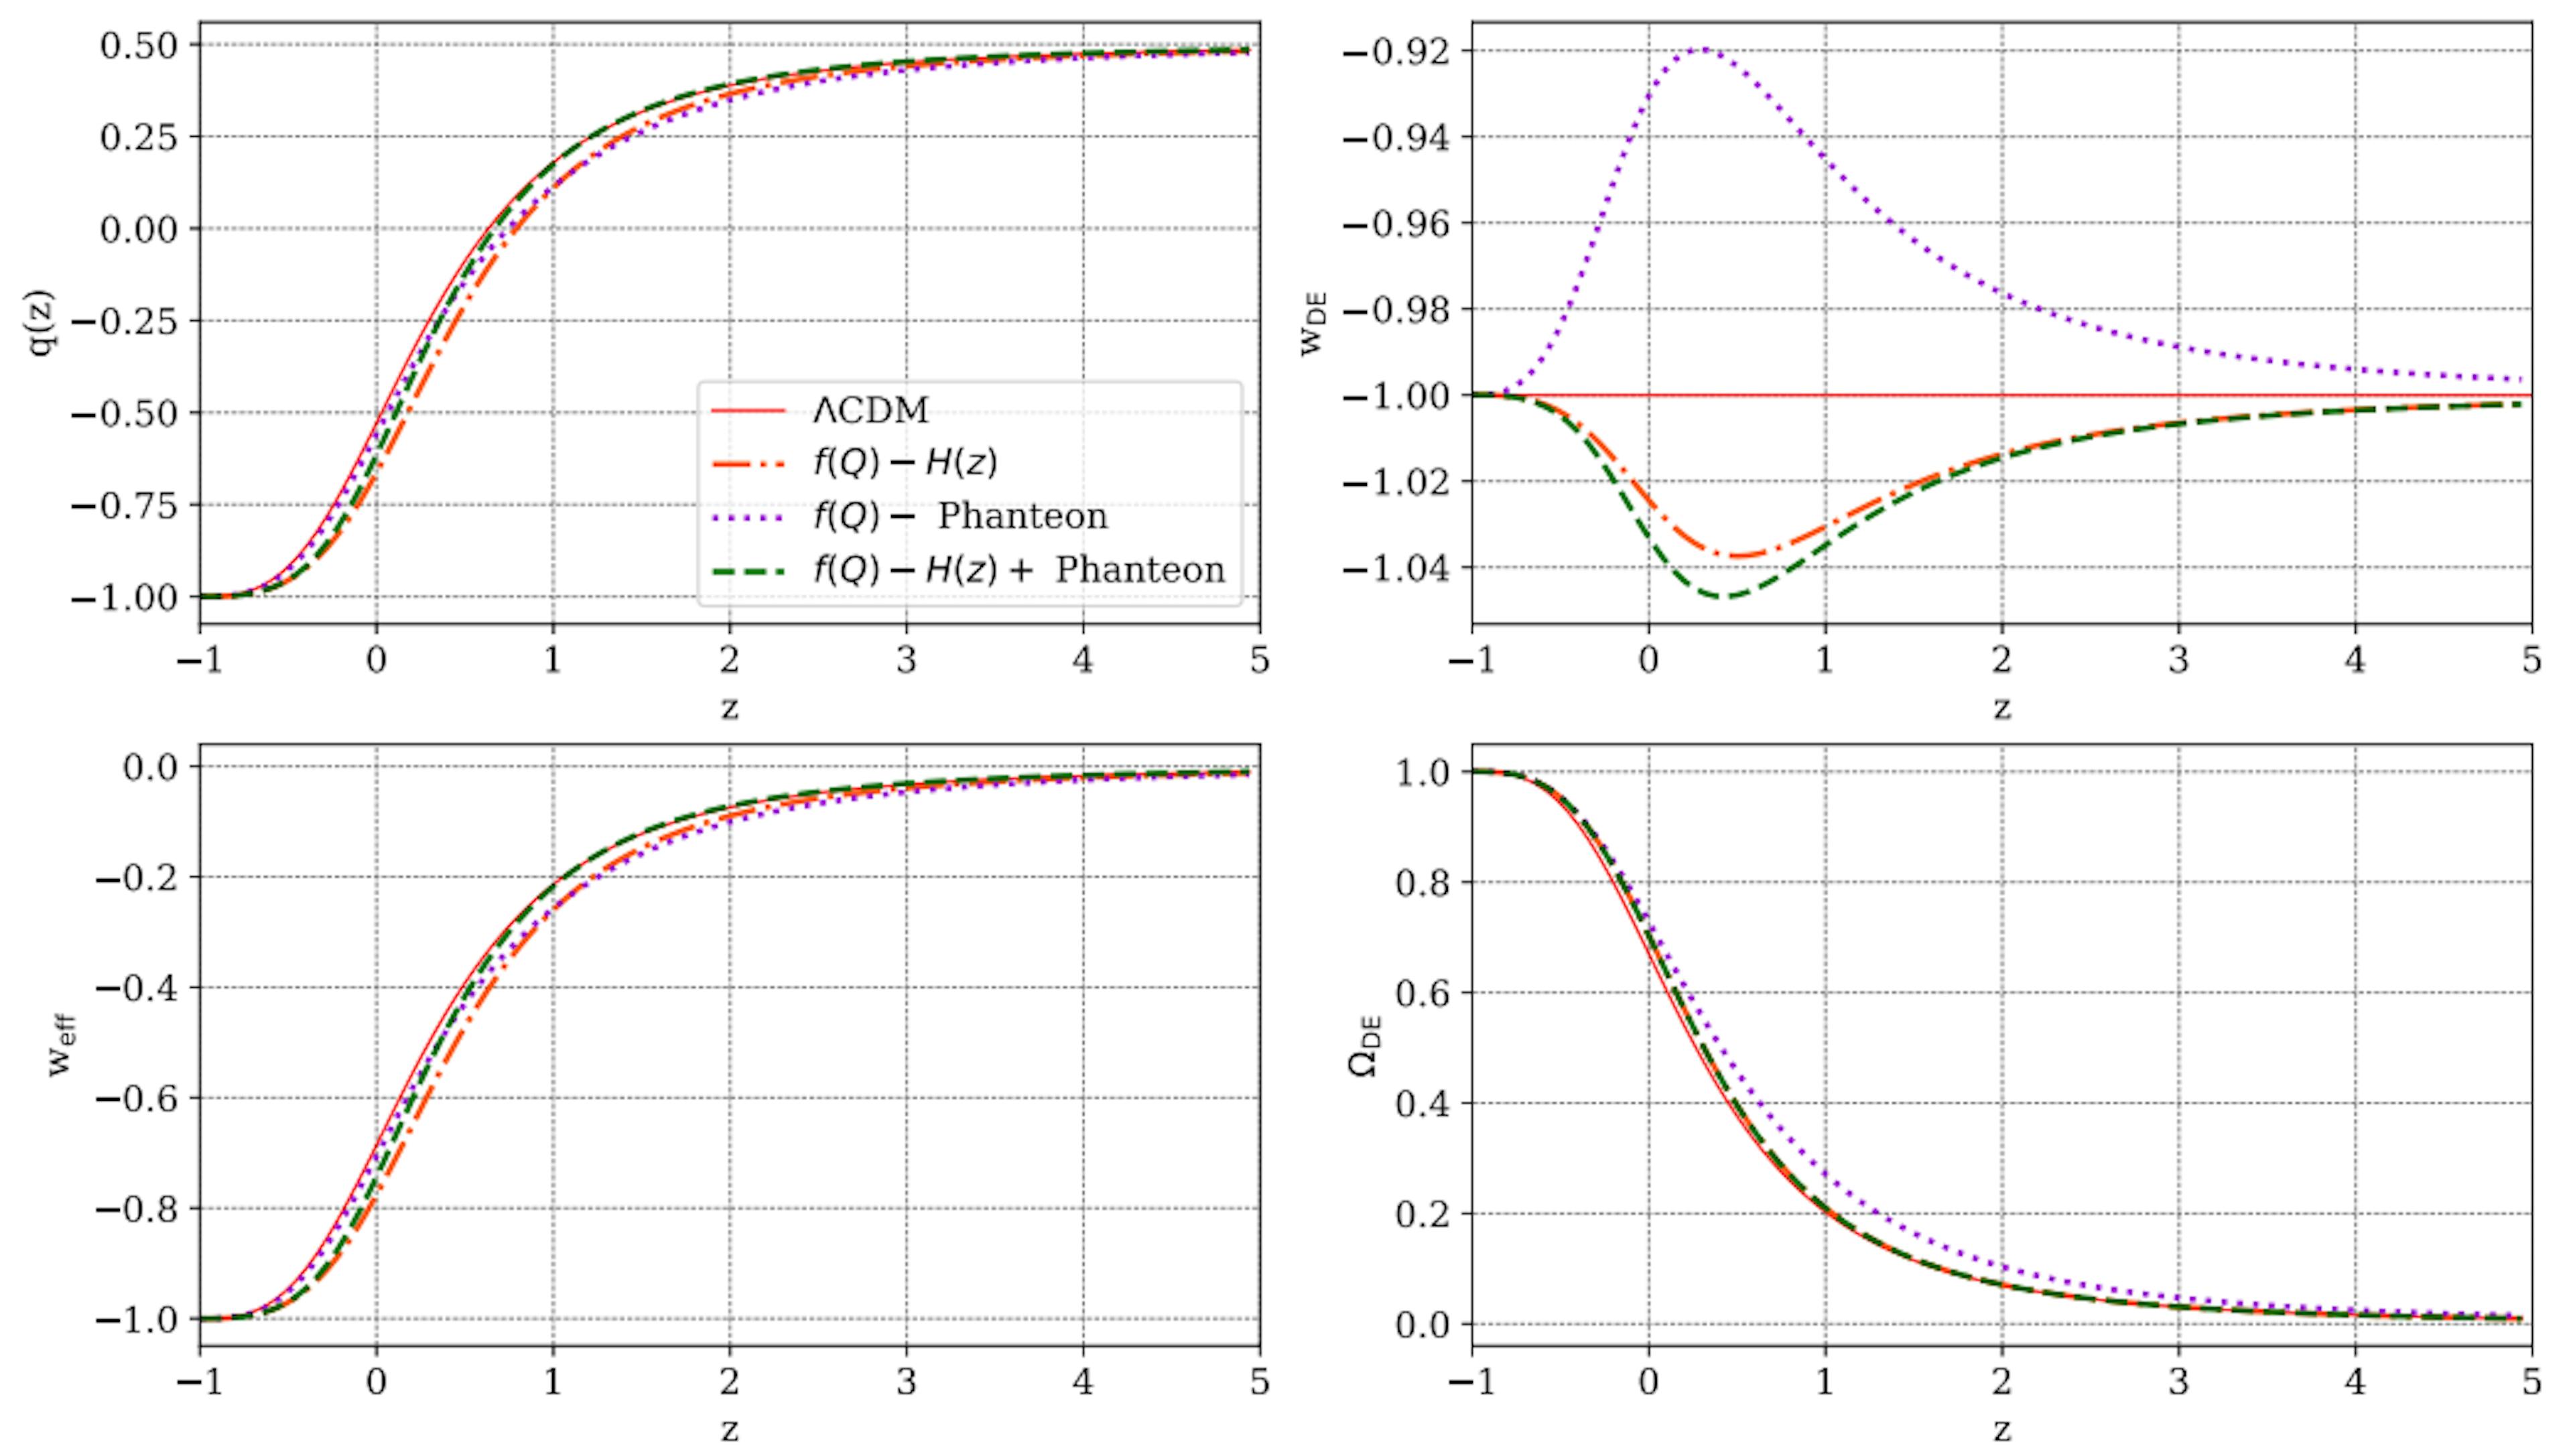 Abbildung 7: Entwicklung einiger kosmologischer Parameter gegenüber der Rotverschiebung z, wie sie für das in dieser Arbeit vorgestellte f(Q)-Modell vorhergesagt wurde, verglichen mit den ΛCDM-Vorhersagen (rote durchgezogene Linie). In jedem Panel sind die gestrichelten orangefarbenen, gestrichelten violetten und gestrichelten grünen Linien das Ergebnis der Parameterbeschränkungen der H(z), Pantheon- und H(z)+Pantheon-Proben.